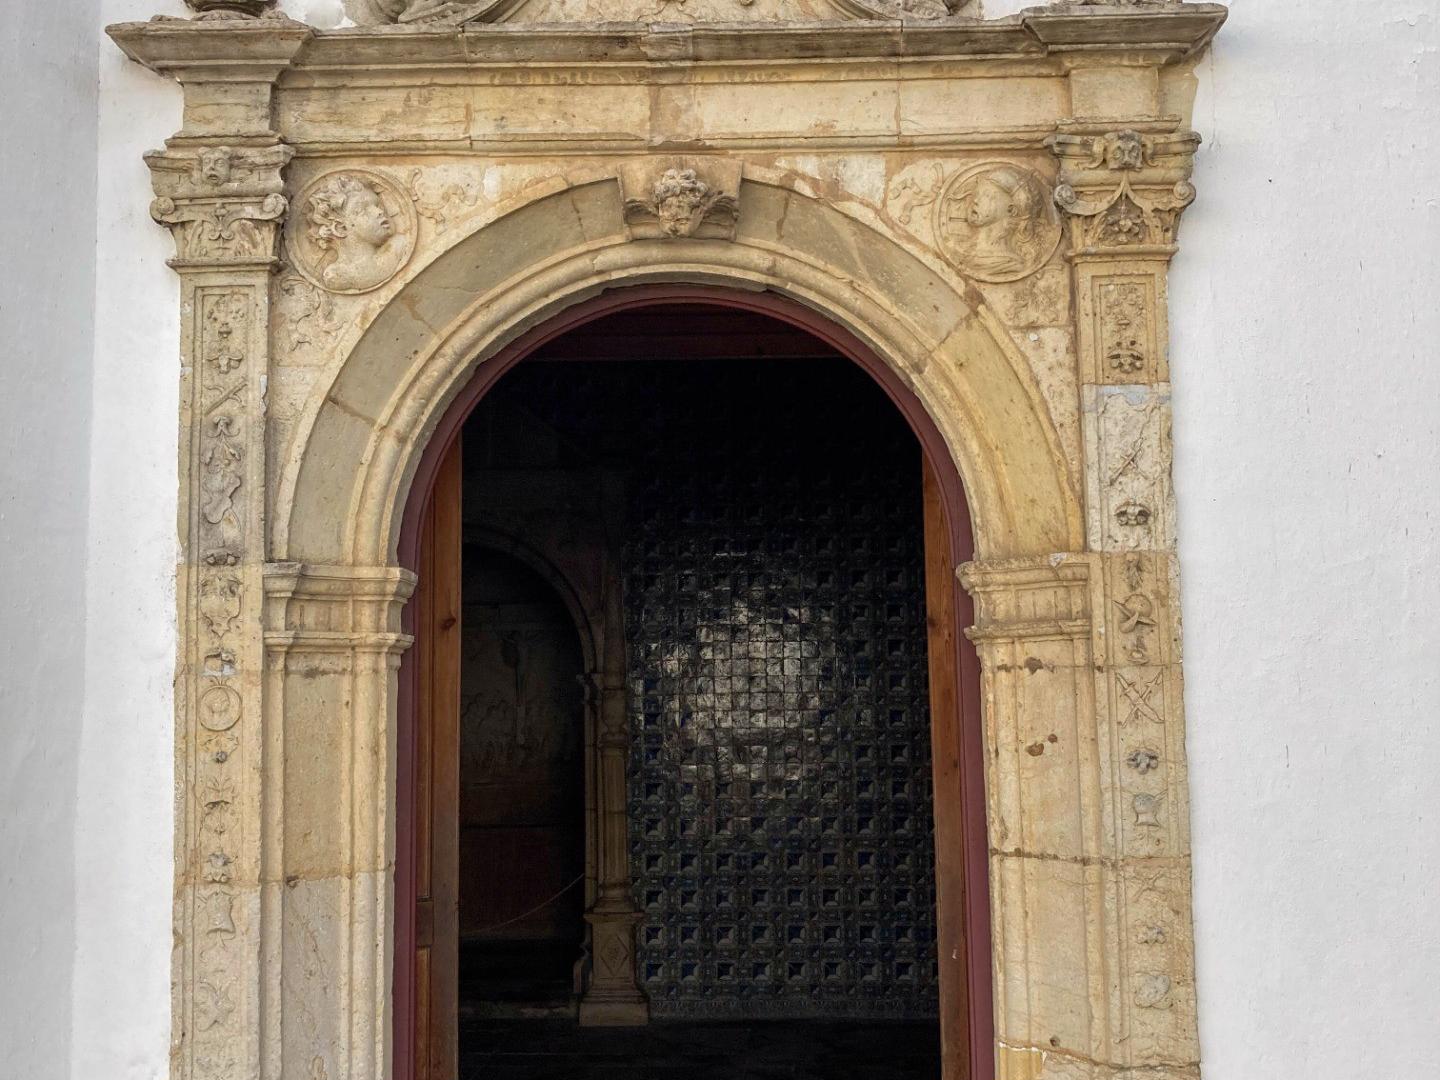 Fachada - Capela dedicada a Santa Iria, padroeira da cidade. Foi mandada construir no século XV, tendo sofrido uma remodelação e ampliação no século XVI, que lhe acrescentou elementos renascentistas. 